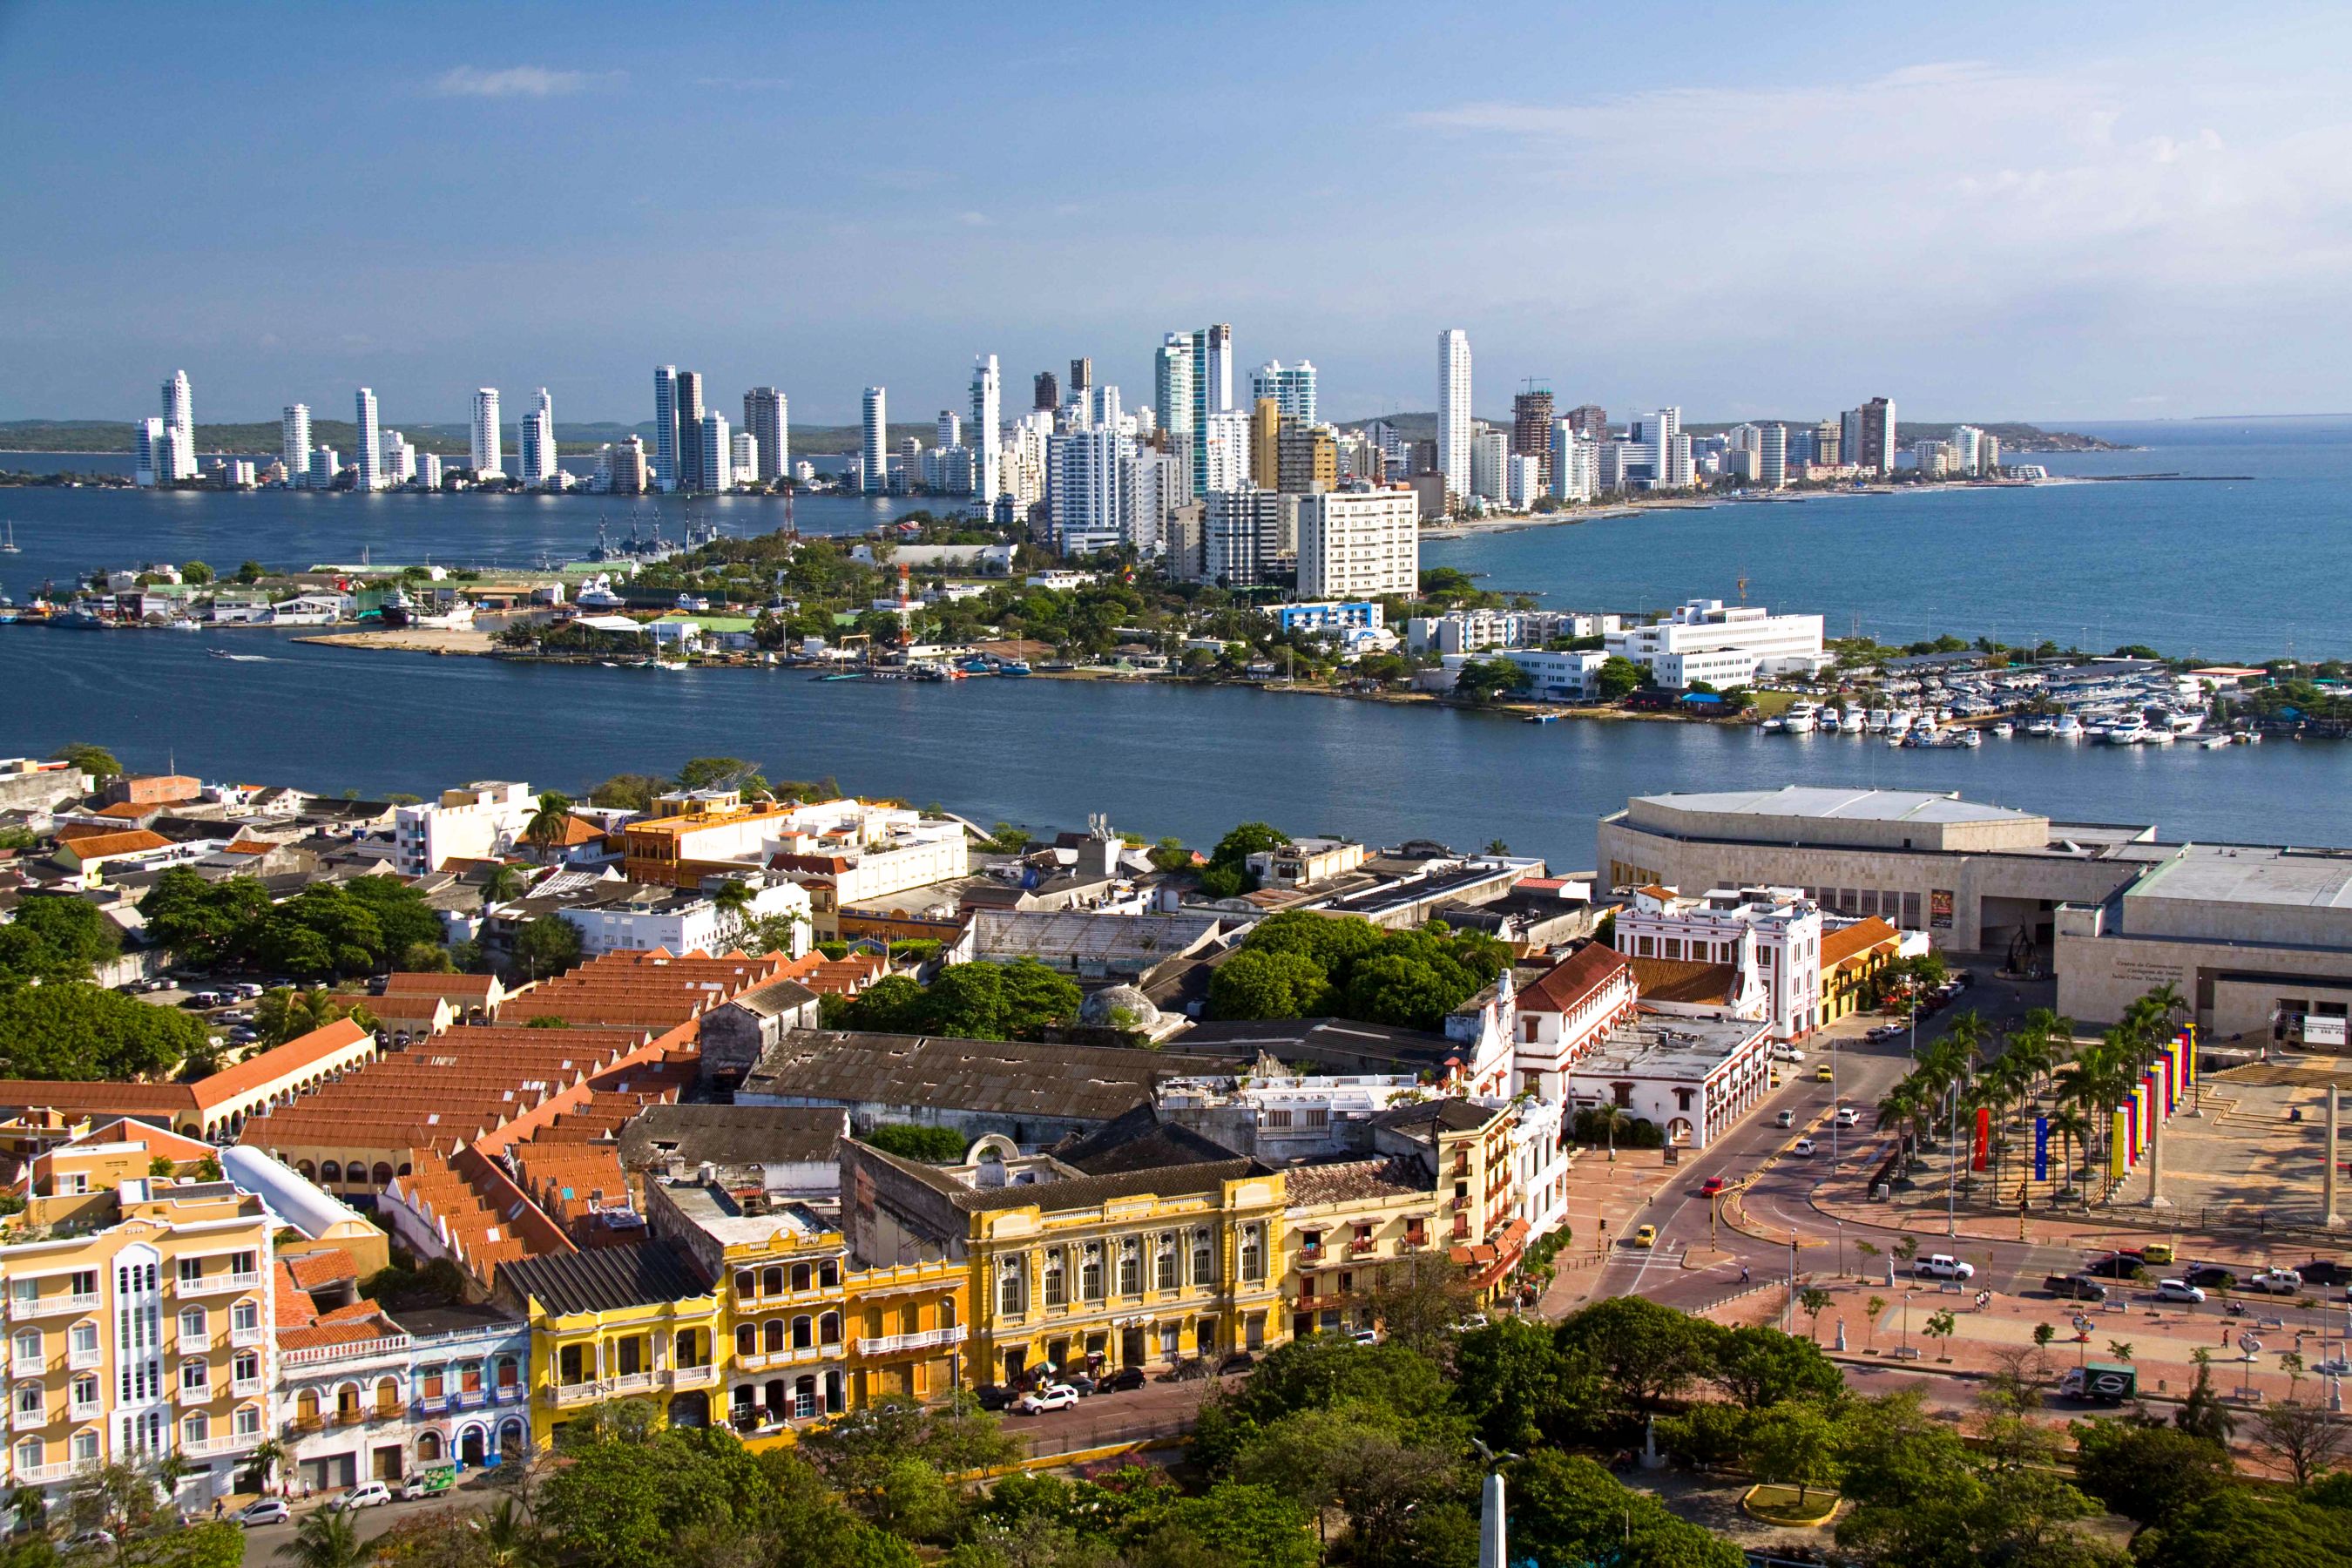 Barrio en Cartagena llamado “República de Venezuela” se quiere cambiar el nombre